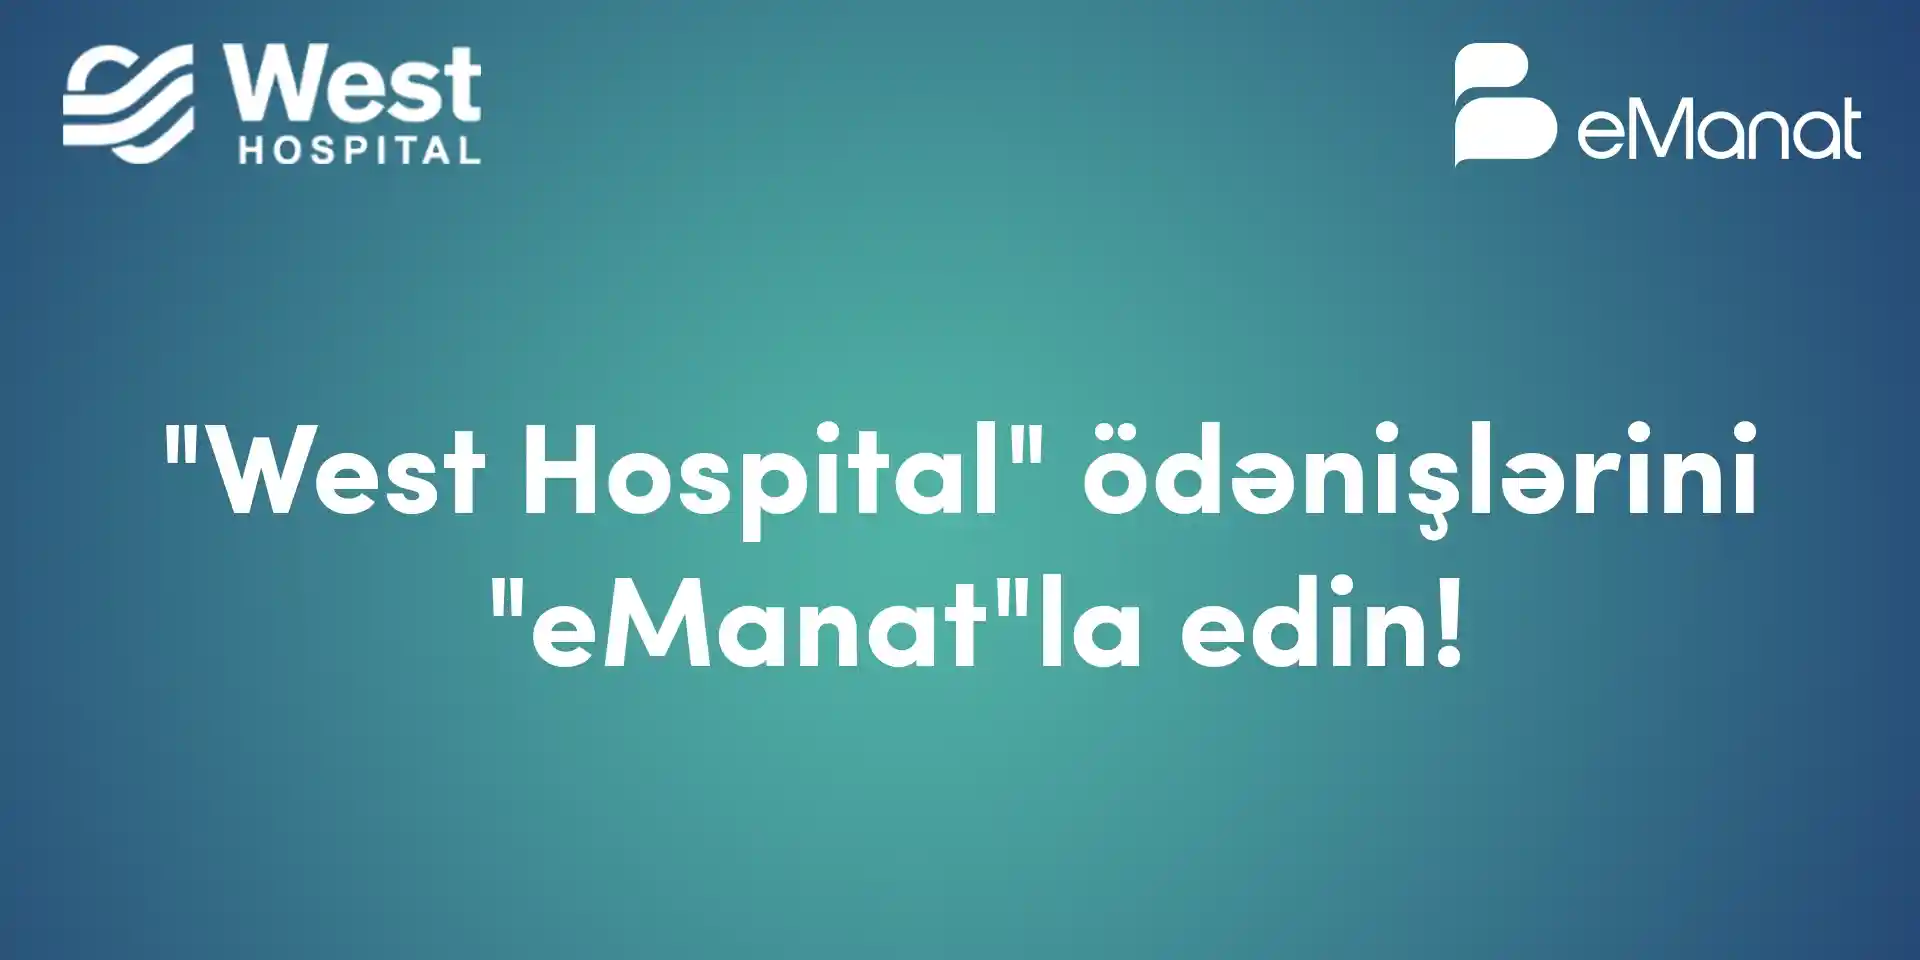 <b>West Hospital ödənişləri eManatda!</b>